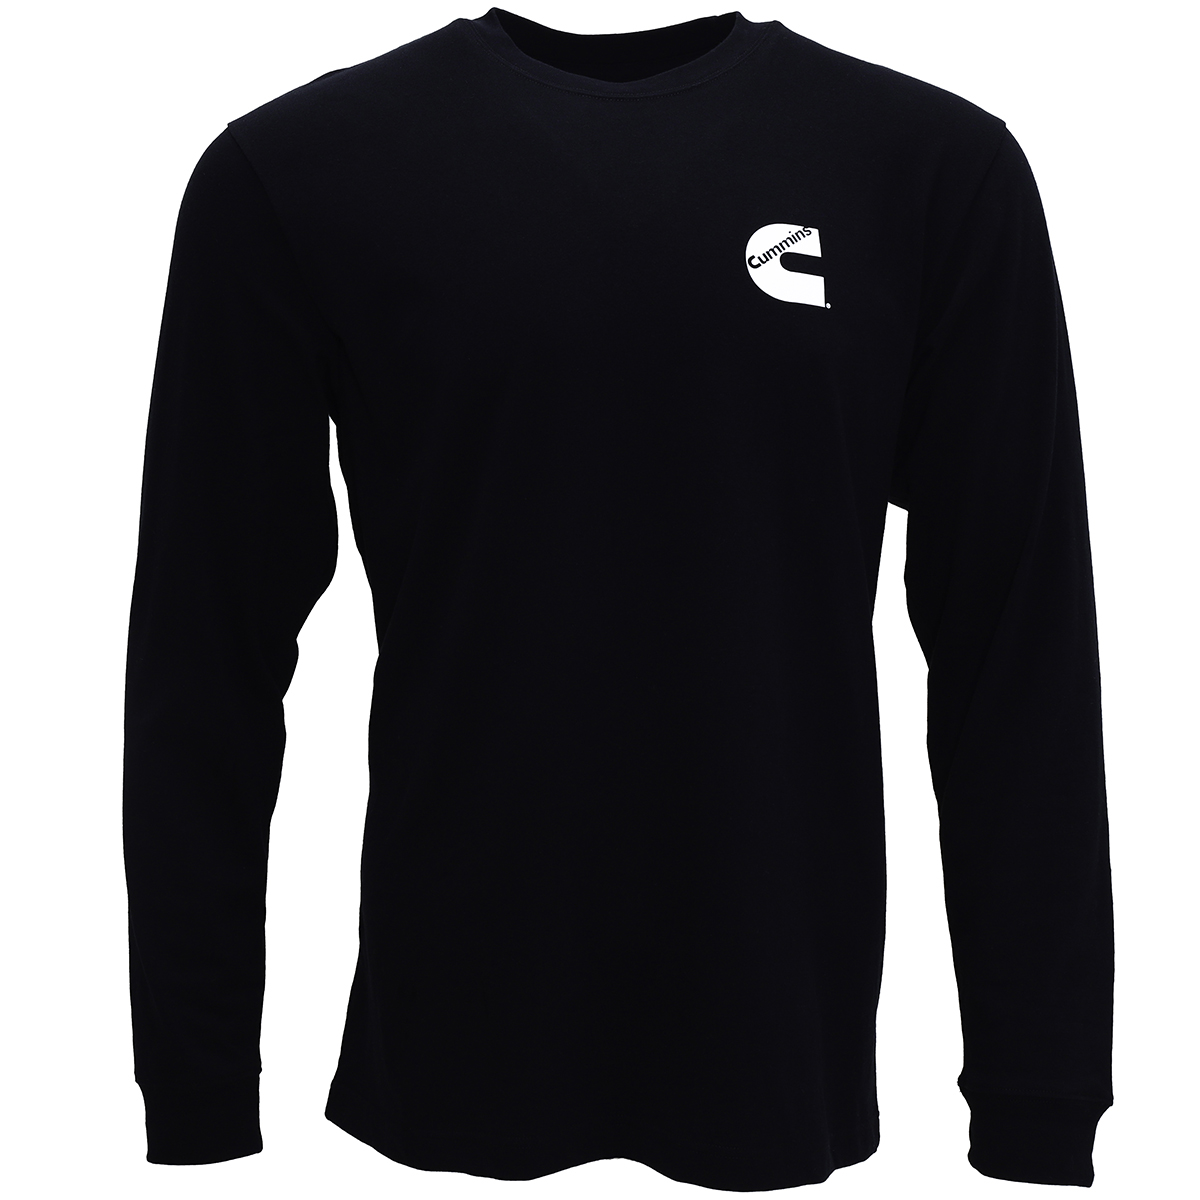 Cummins Unisex Long Sleeve T-shirt Black All Cotton Tee CMN4781 - 4XL